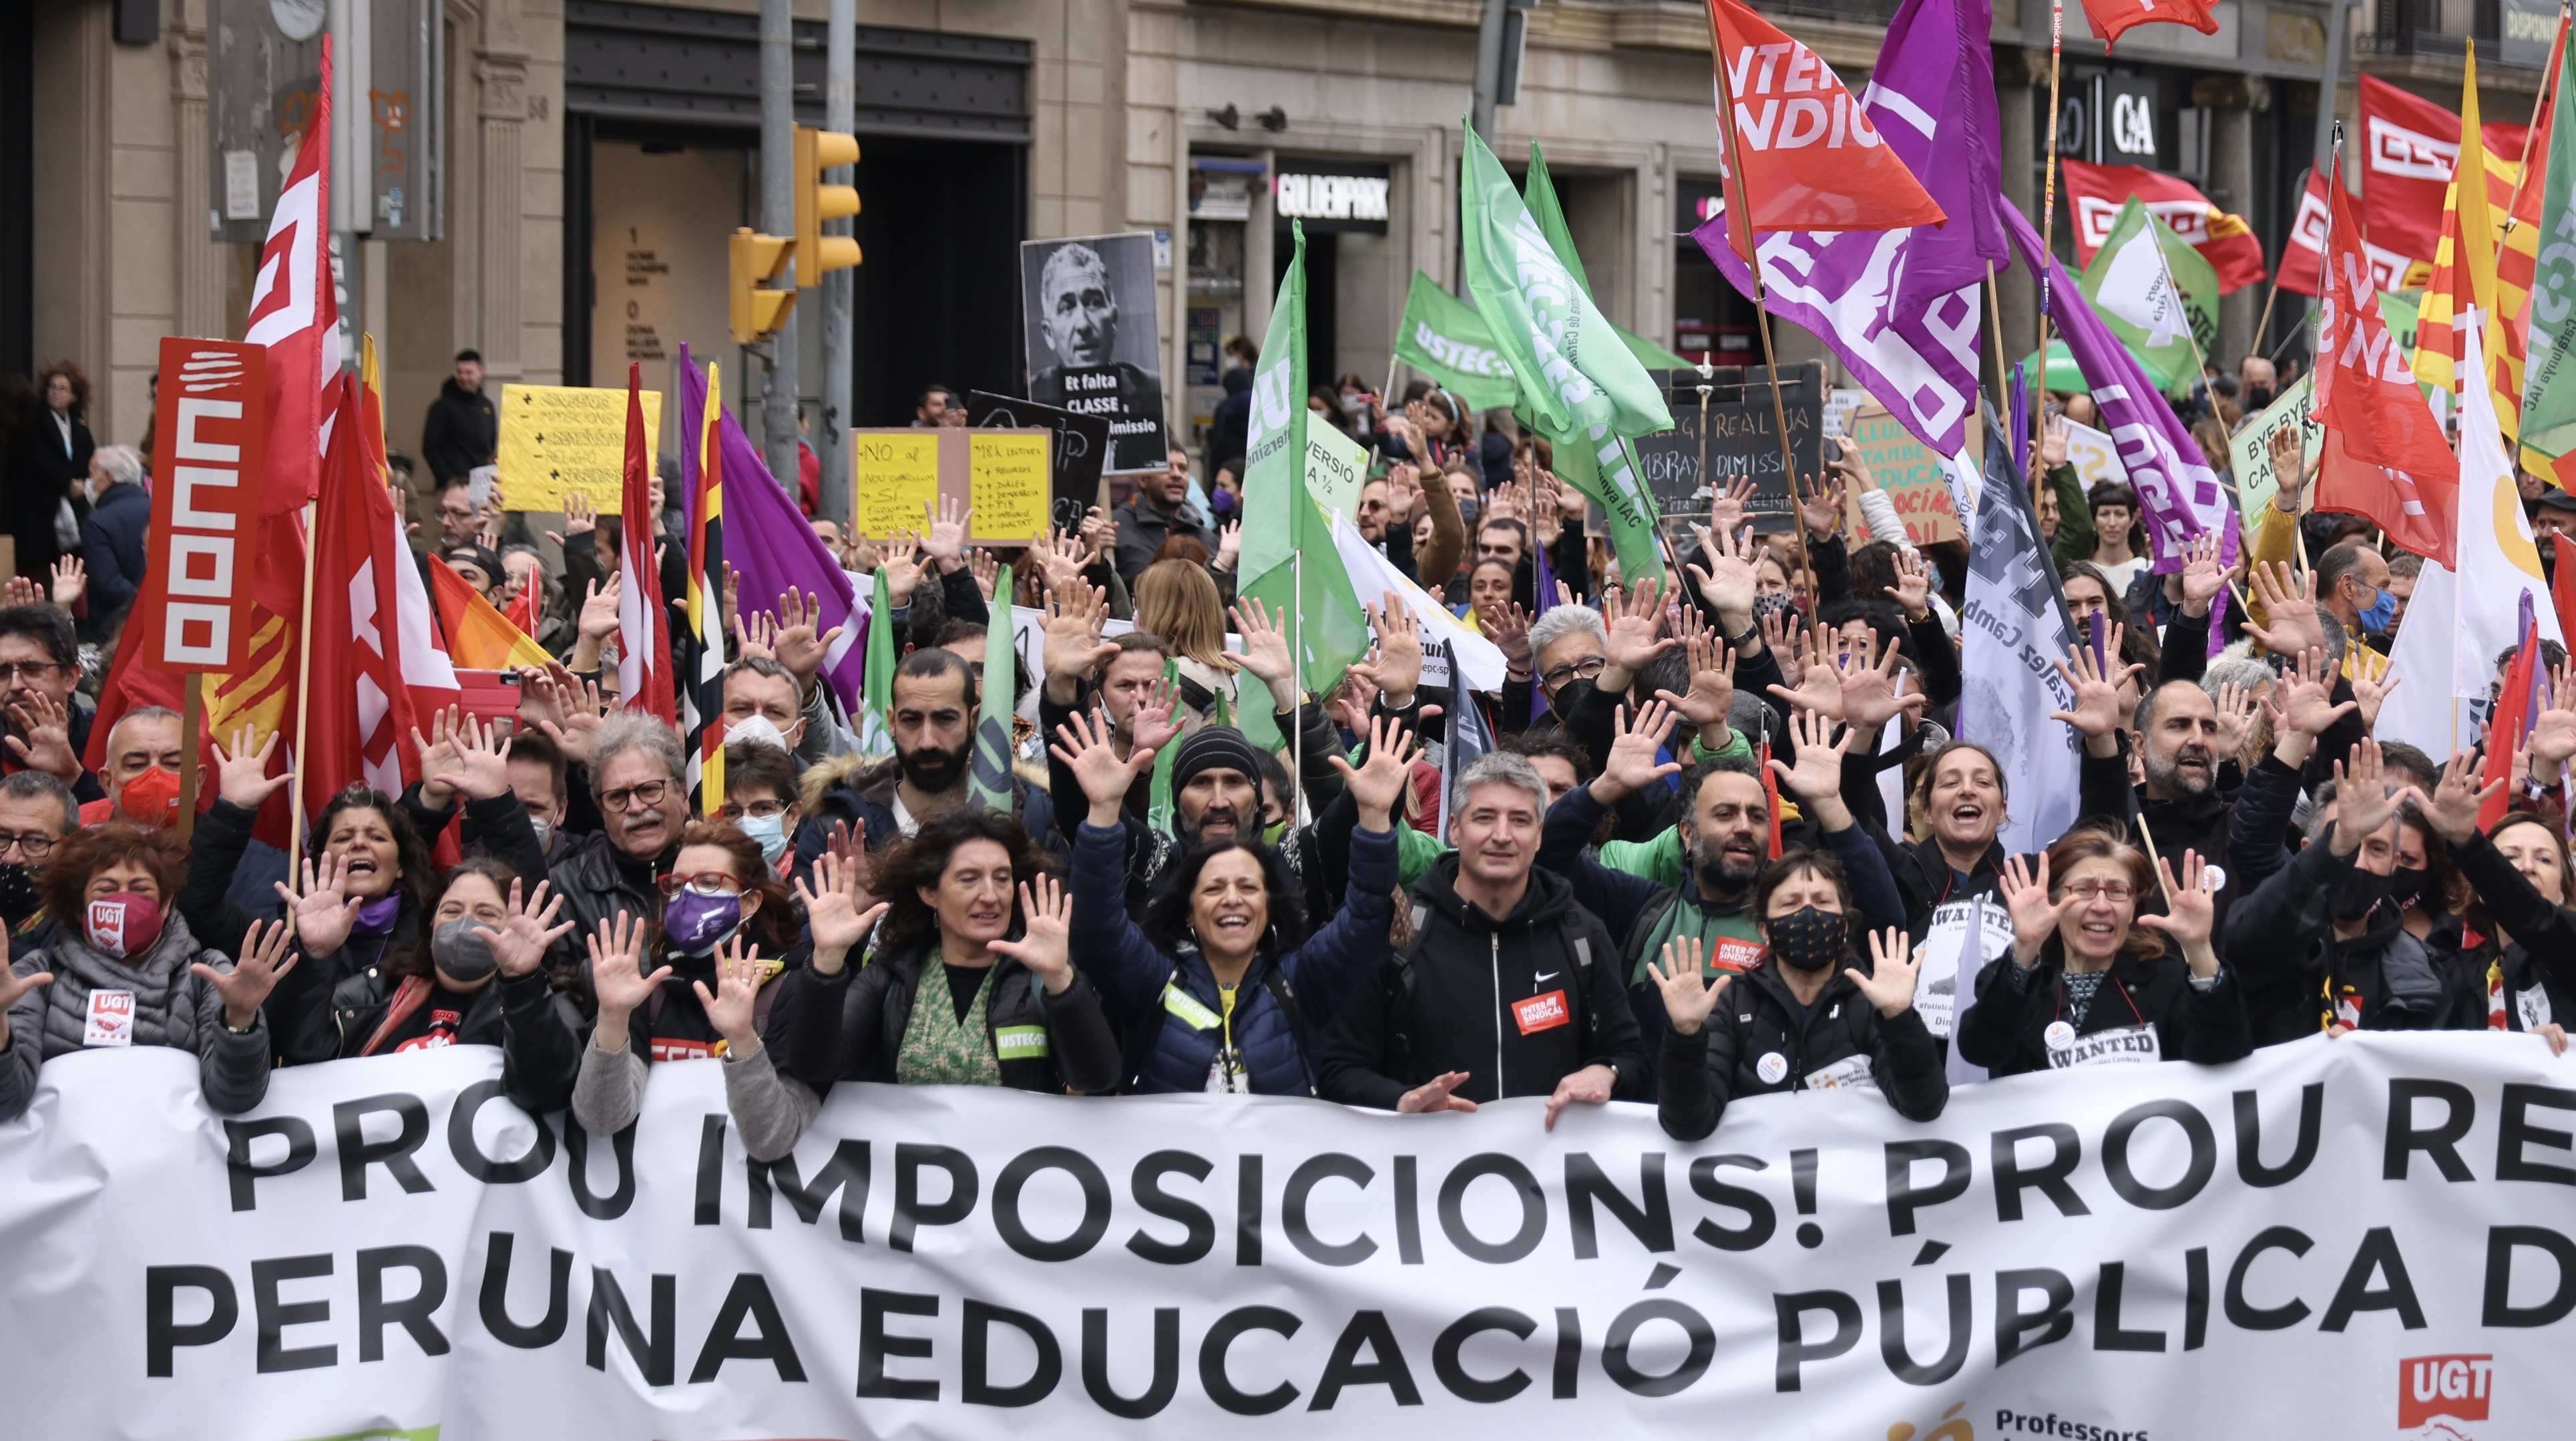 La huelga de educación continúa el 29 y 30 de marzo en plenas negociaciones